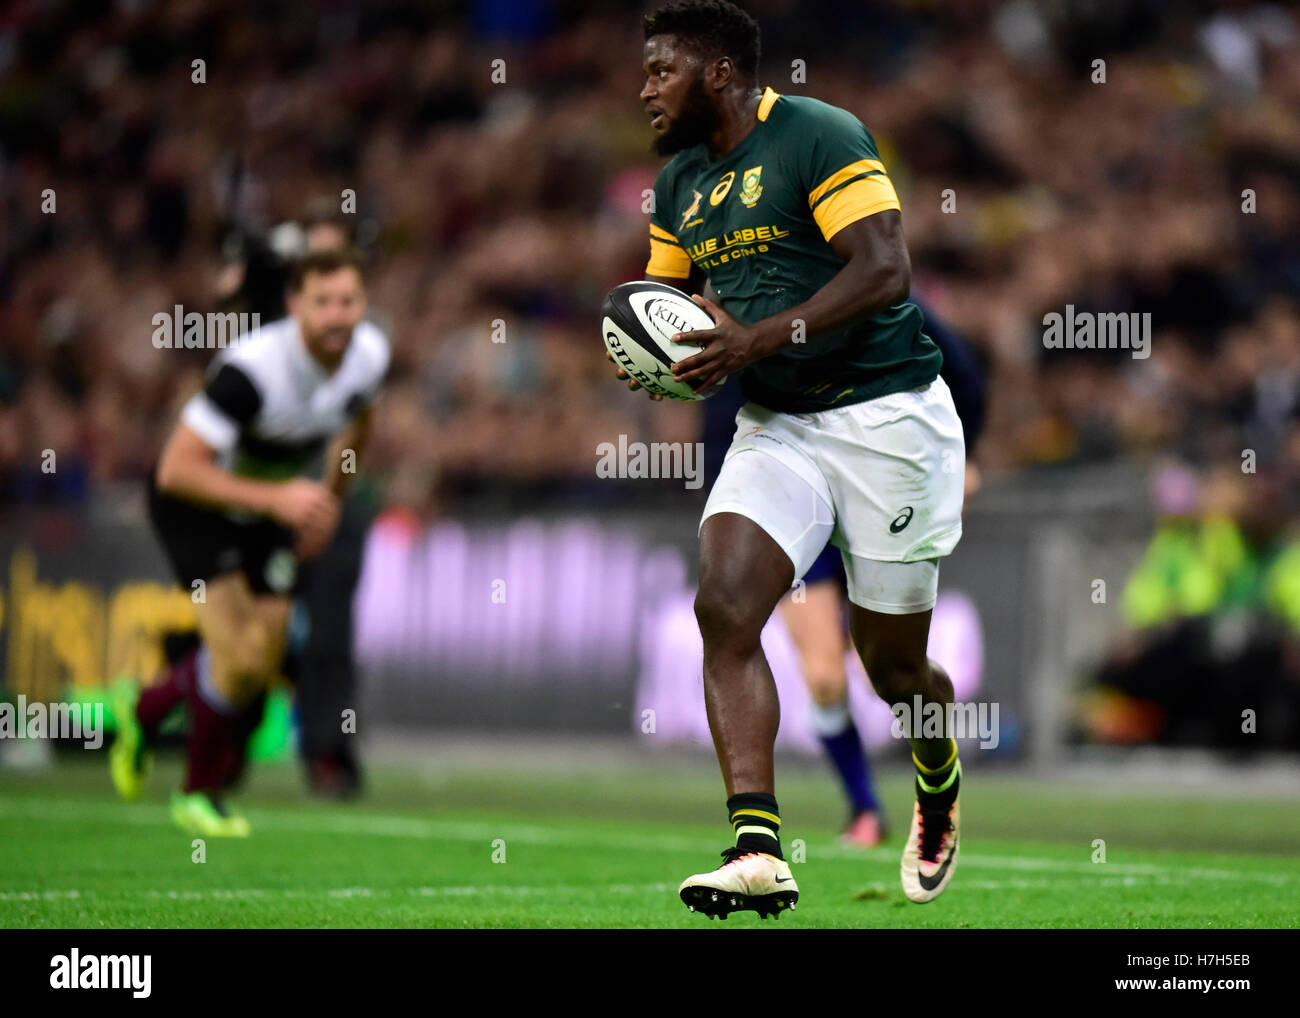 Londra, Inghilterra - 5 Novembre, 2016: Jamba Ulengo tenta passando la palla al suo compagno di squadra durante la partita di rugby tra i barbari vs Sud Africa allo Stadio di Wembley. Credito: Taka Wu/Alamy Live News Foto Stock